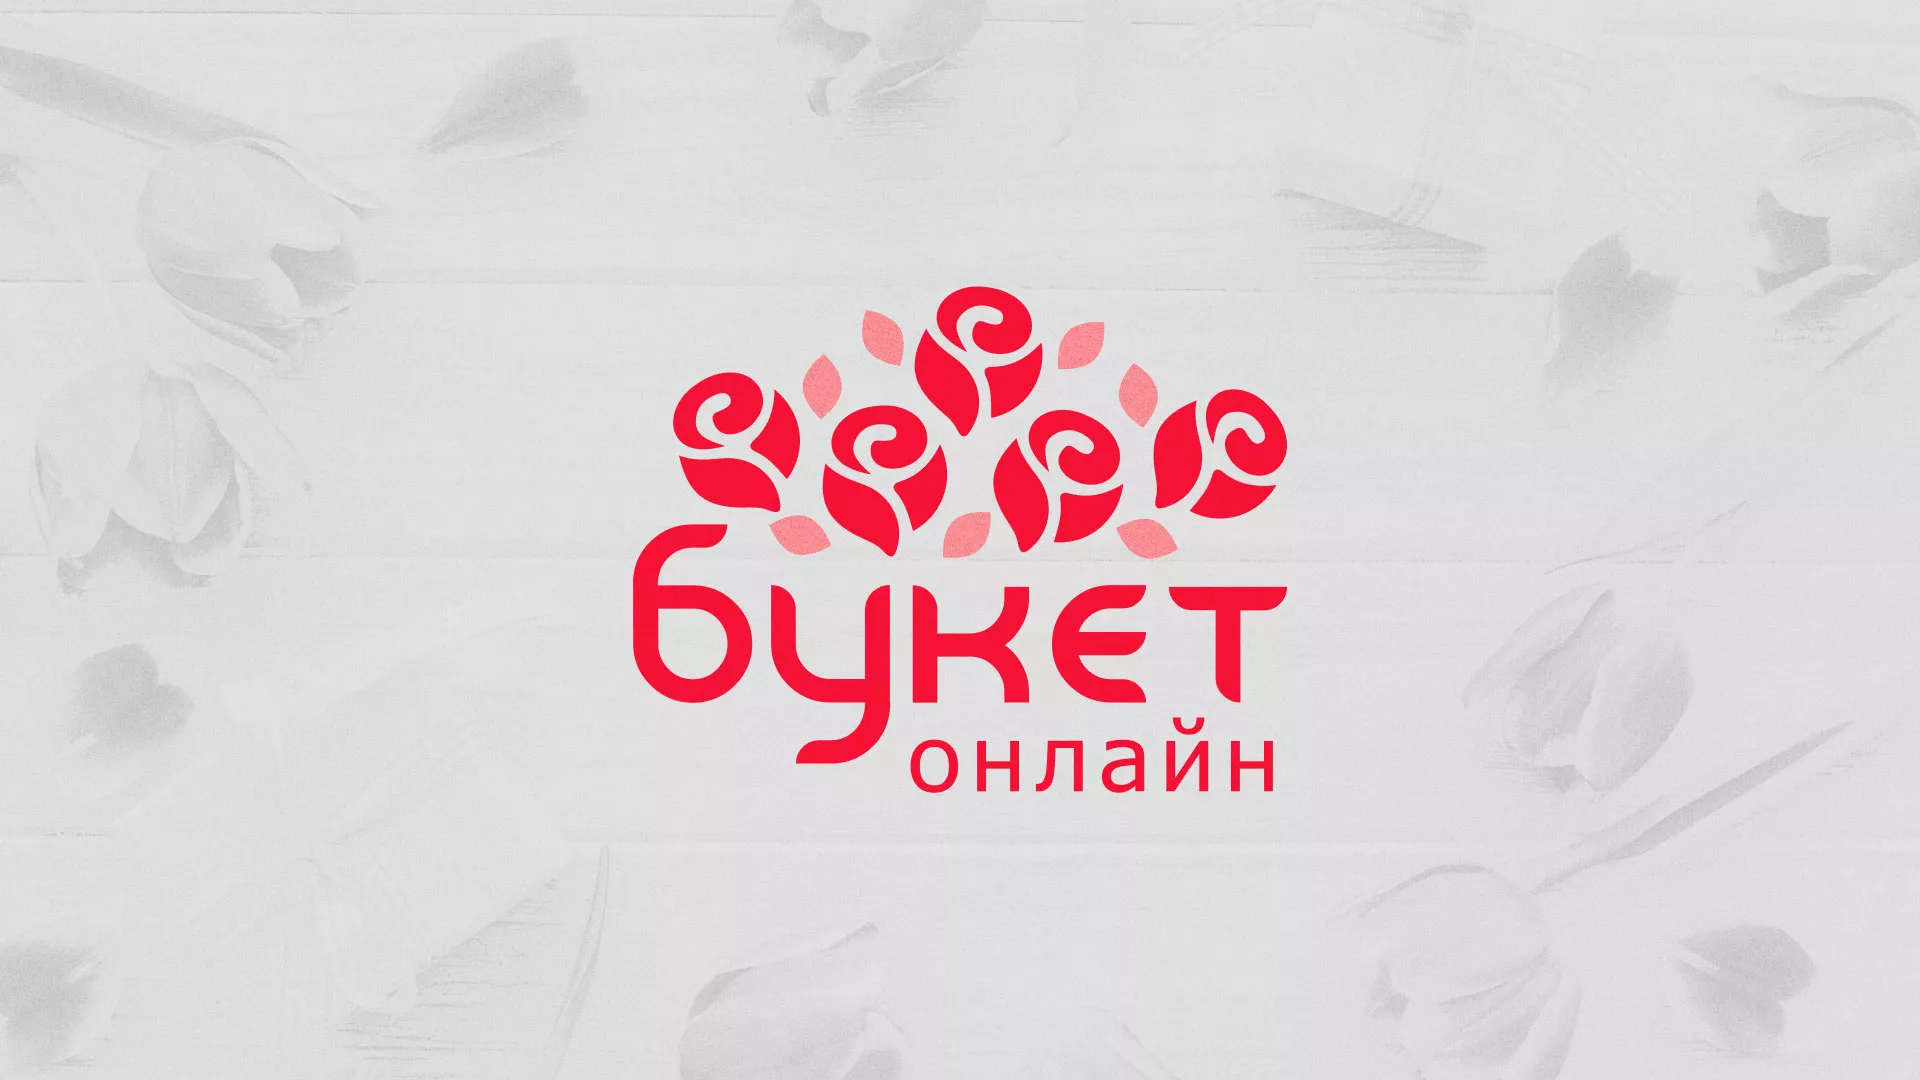 Создание интернет-магазина «Букет-онлайн» по цветам в Снежногорске